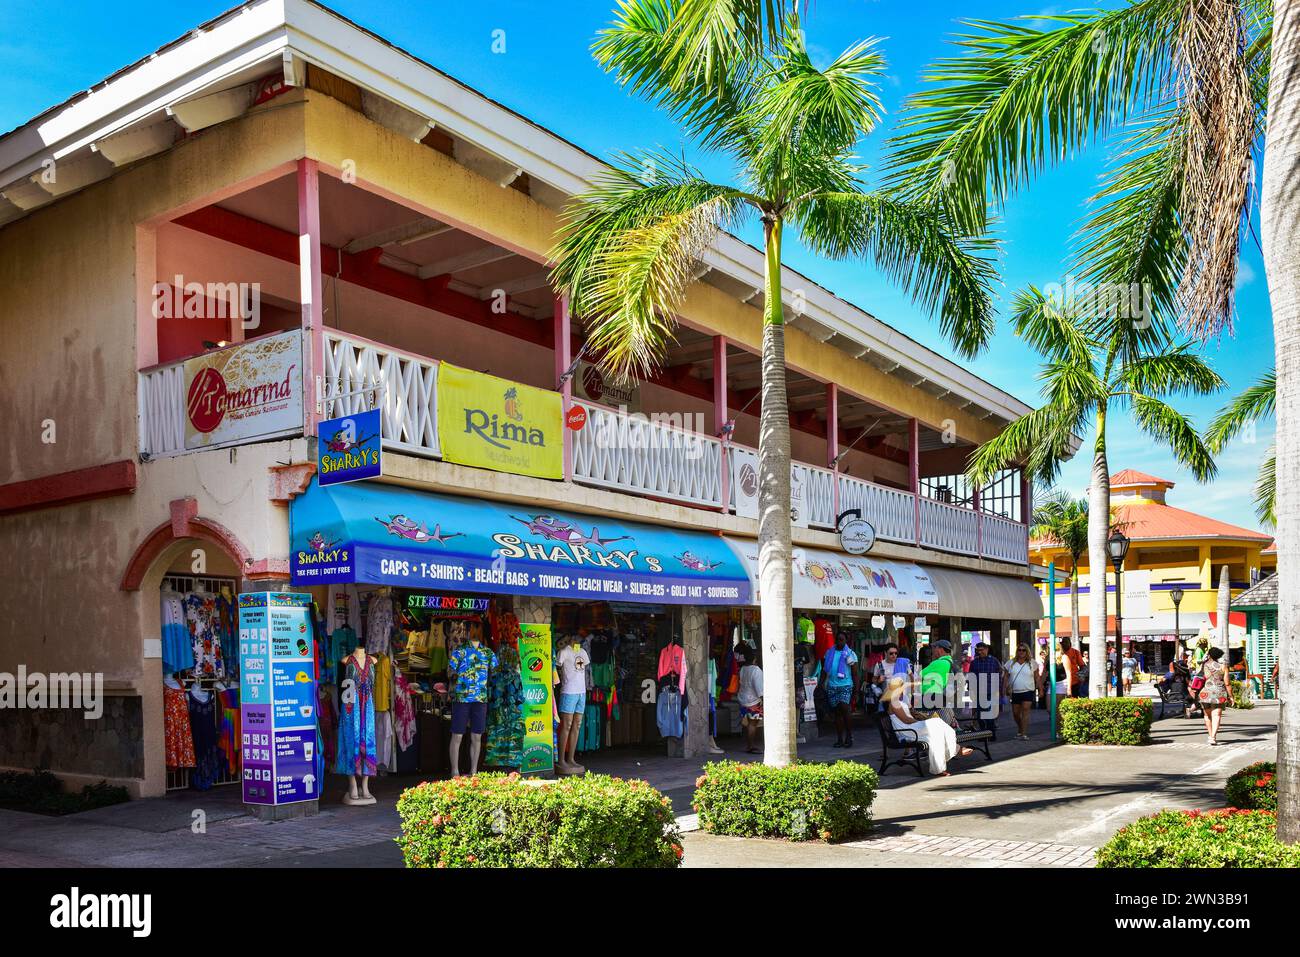 St. Kitts, Virgin Islands tourist shopping center Stock Photo